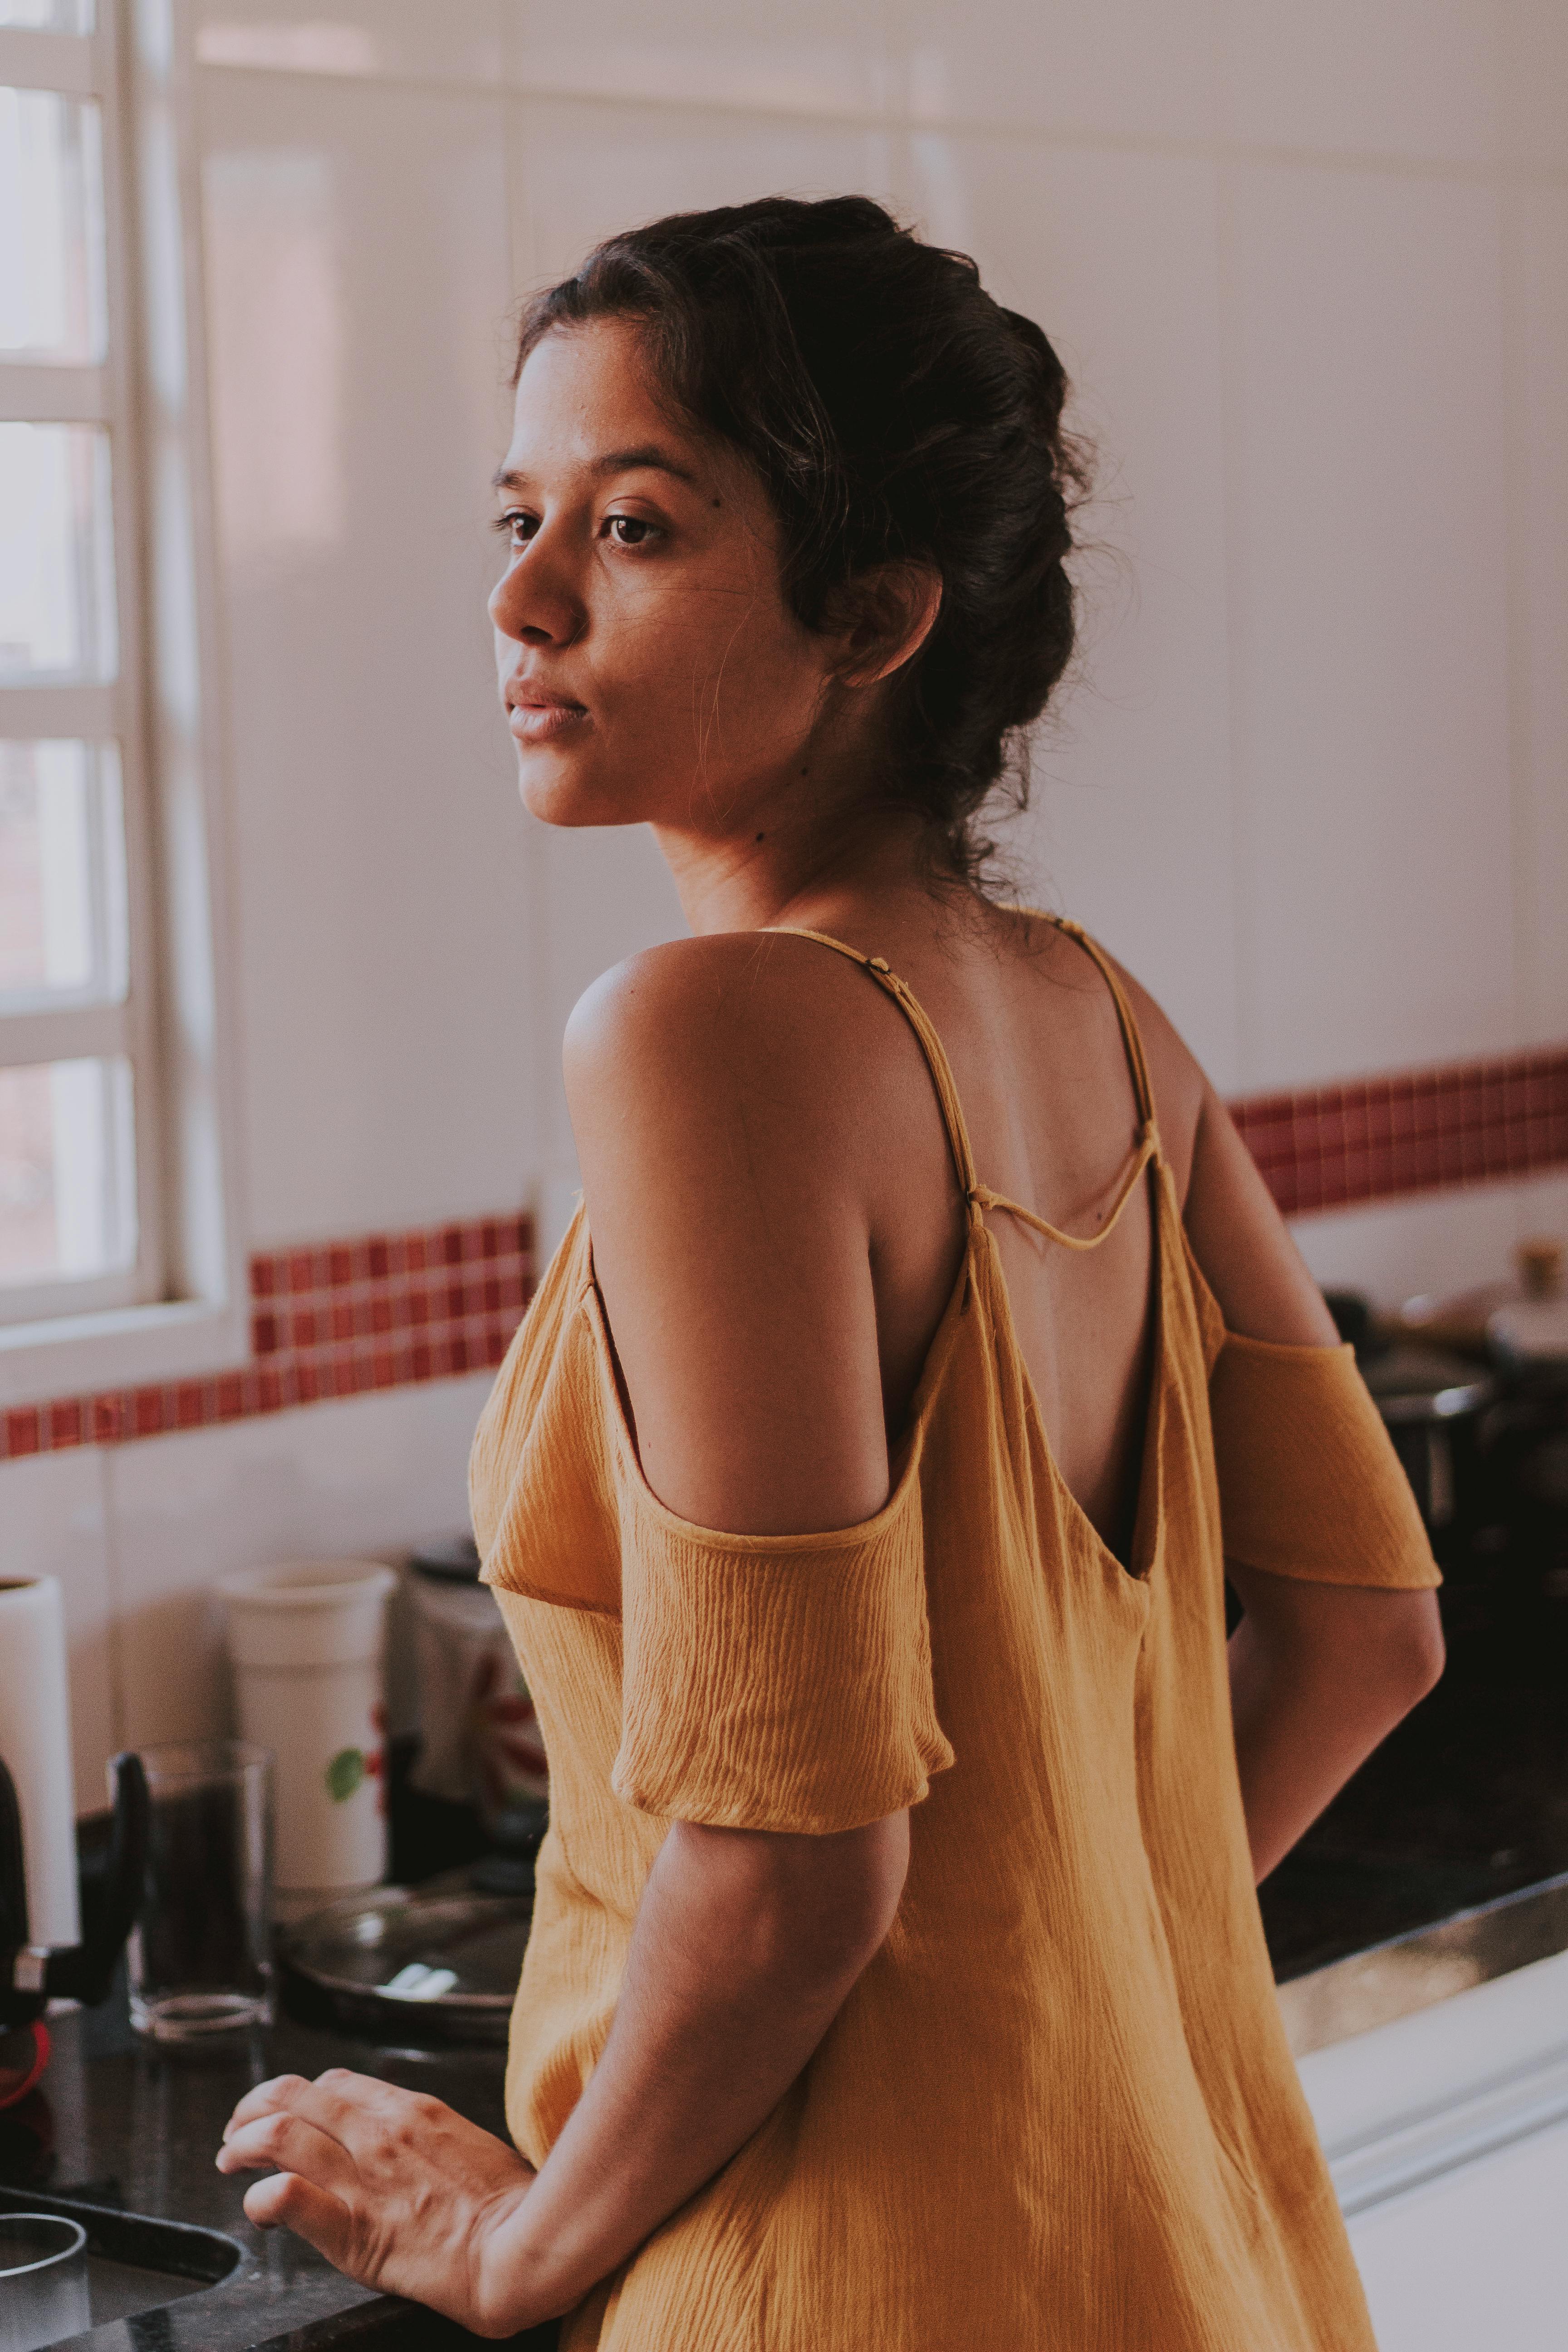 Eine Frau, die verärgert in der Küche steht | Quelle: Pexels